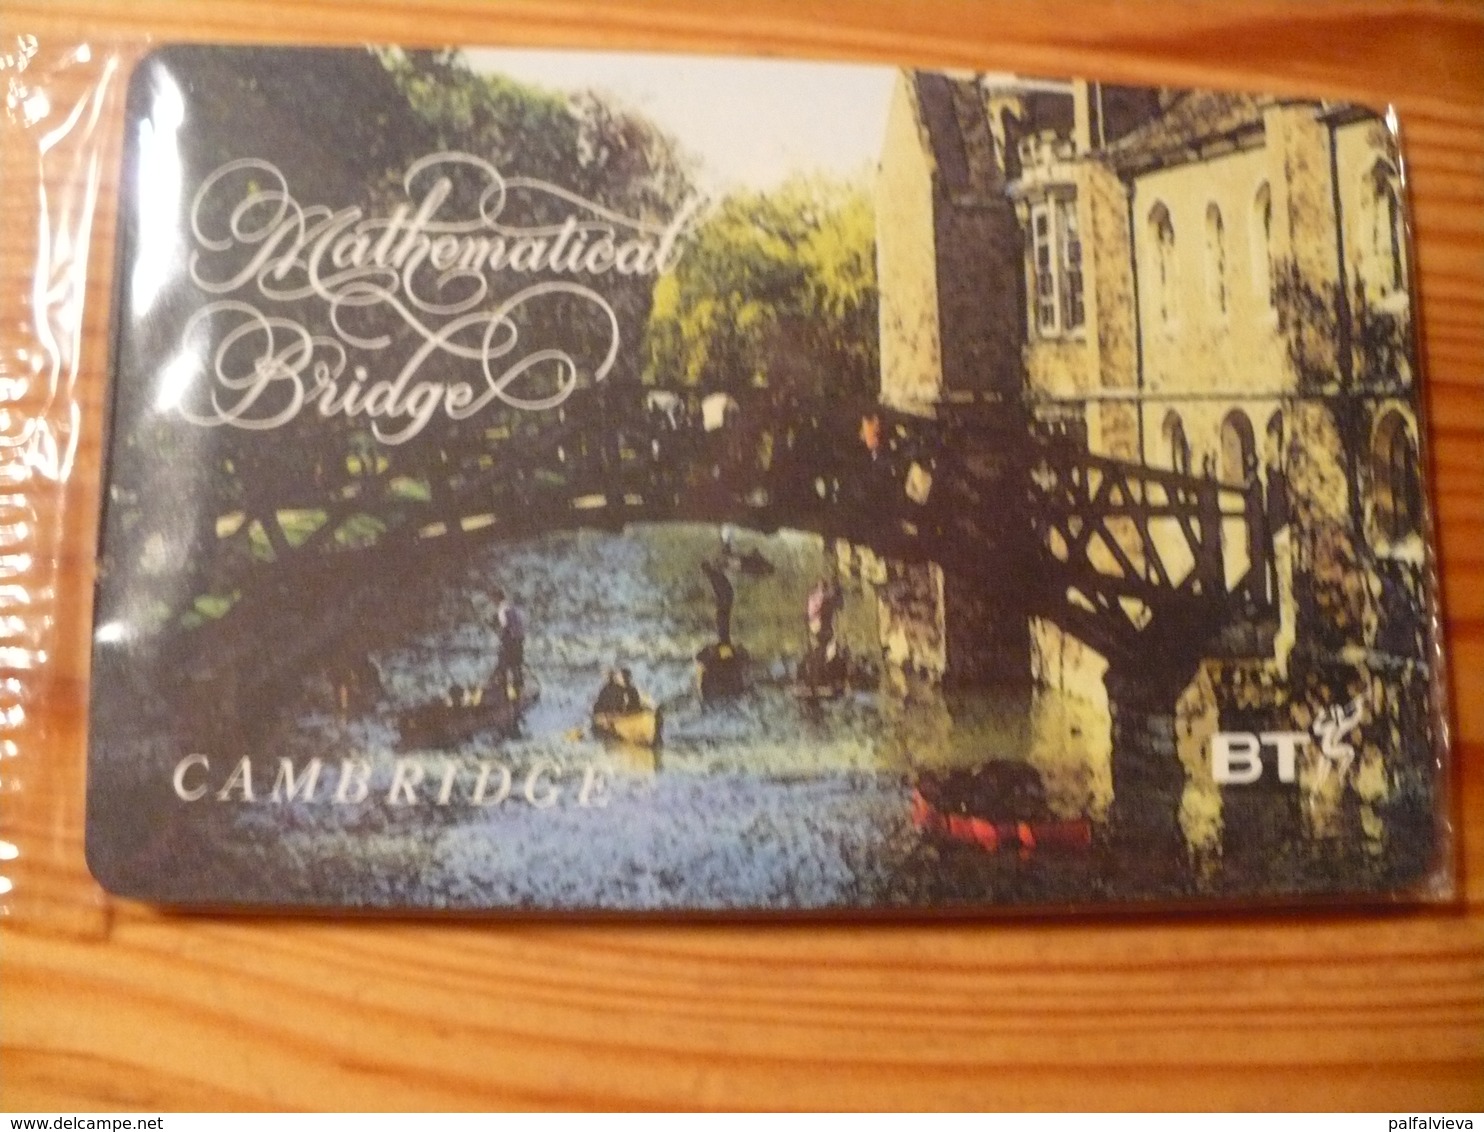 Phonecard United Kingdom, BT - Cambridge, Matchematical Bridge - BT Allgemeine